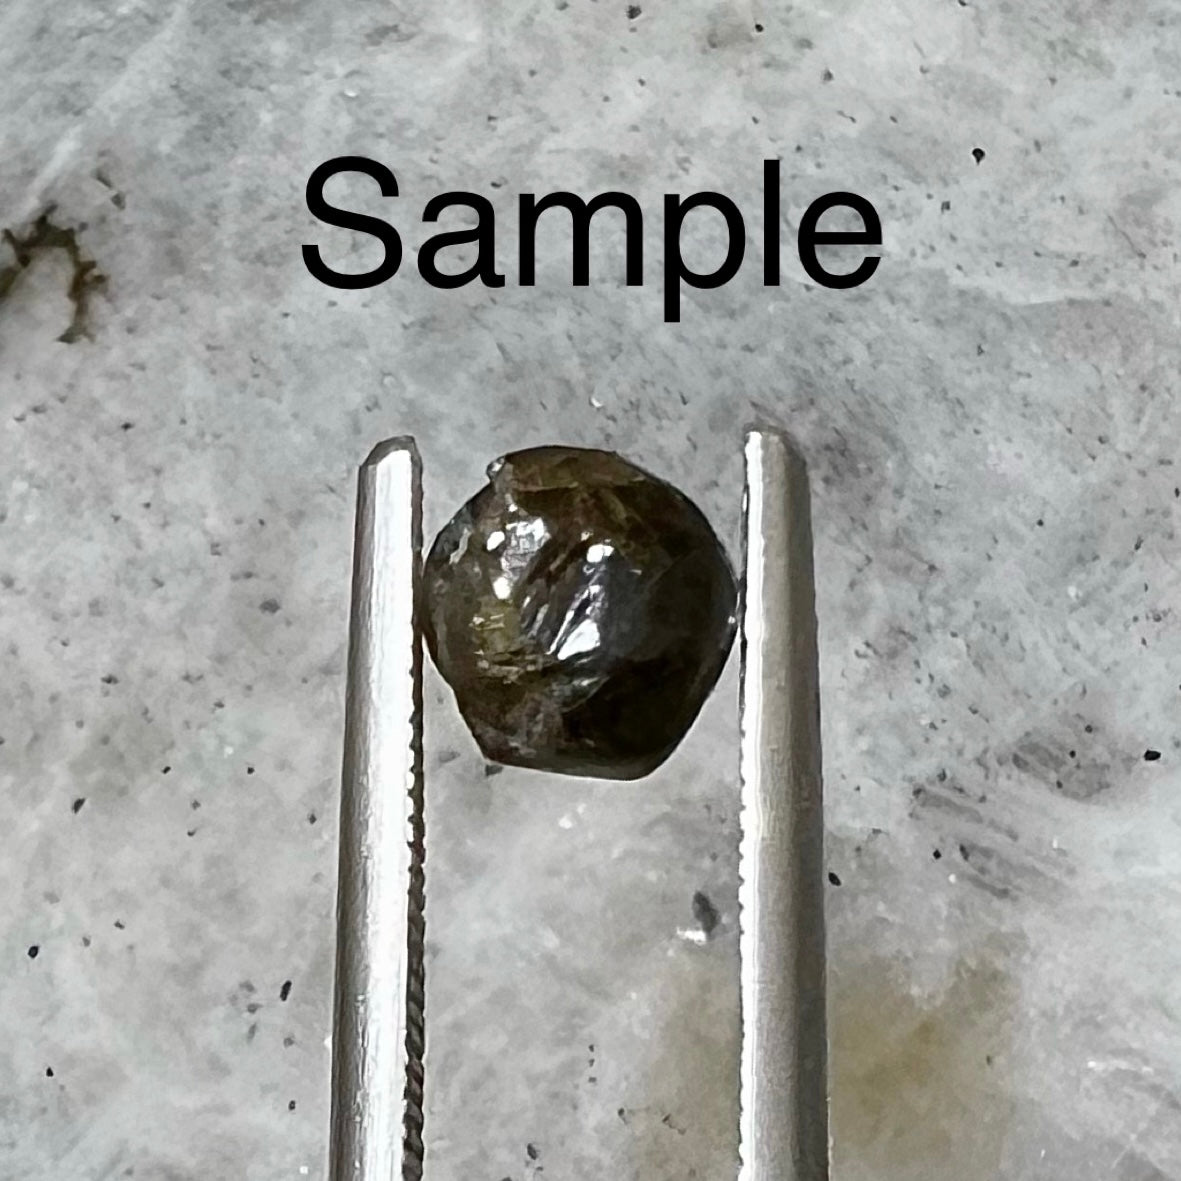 A single sample black diamond crystal held in steel tweezers.